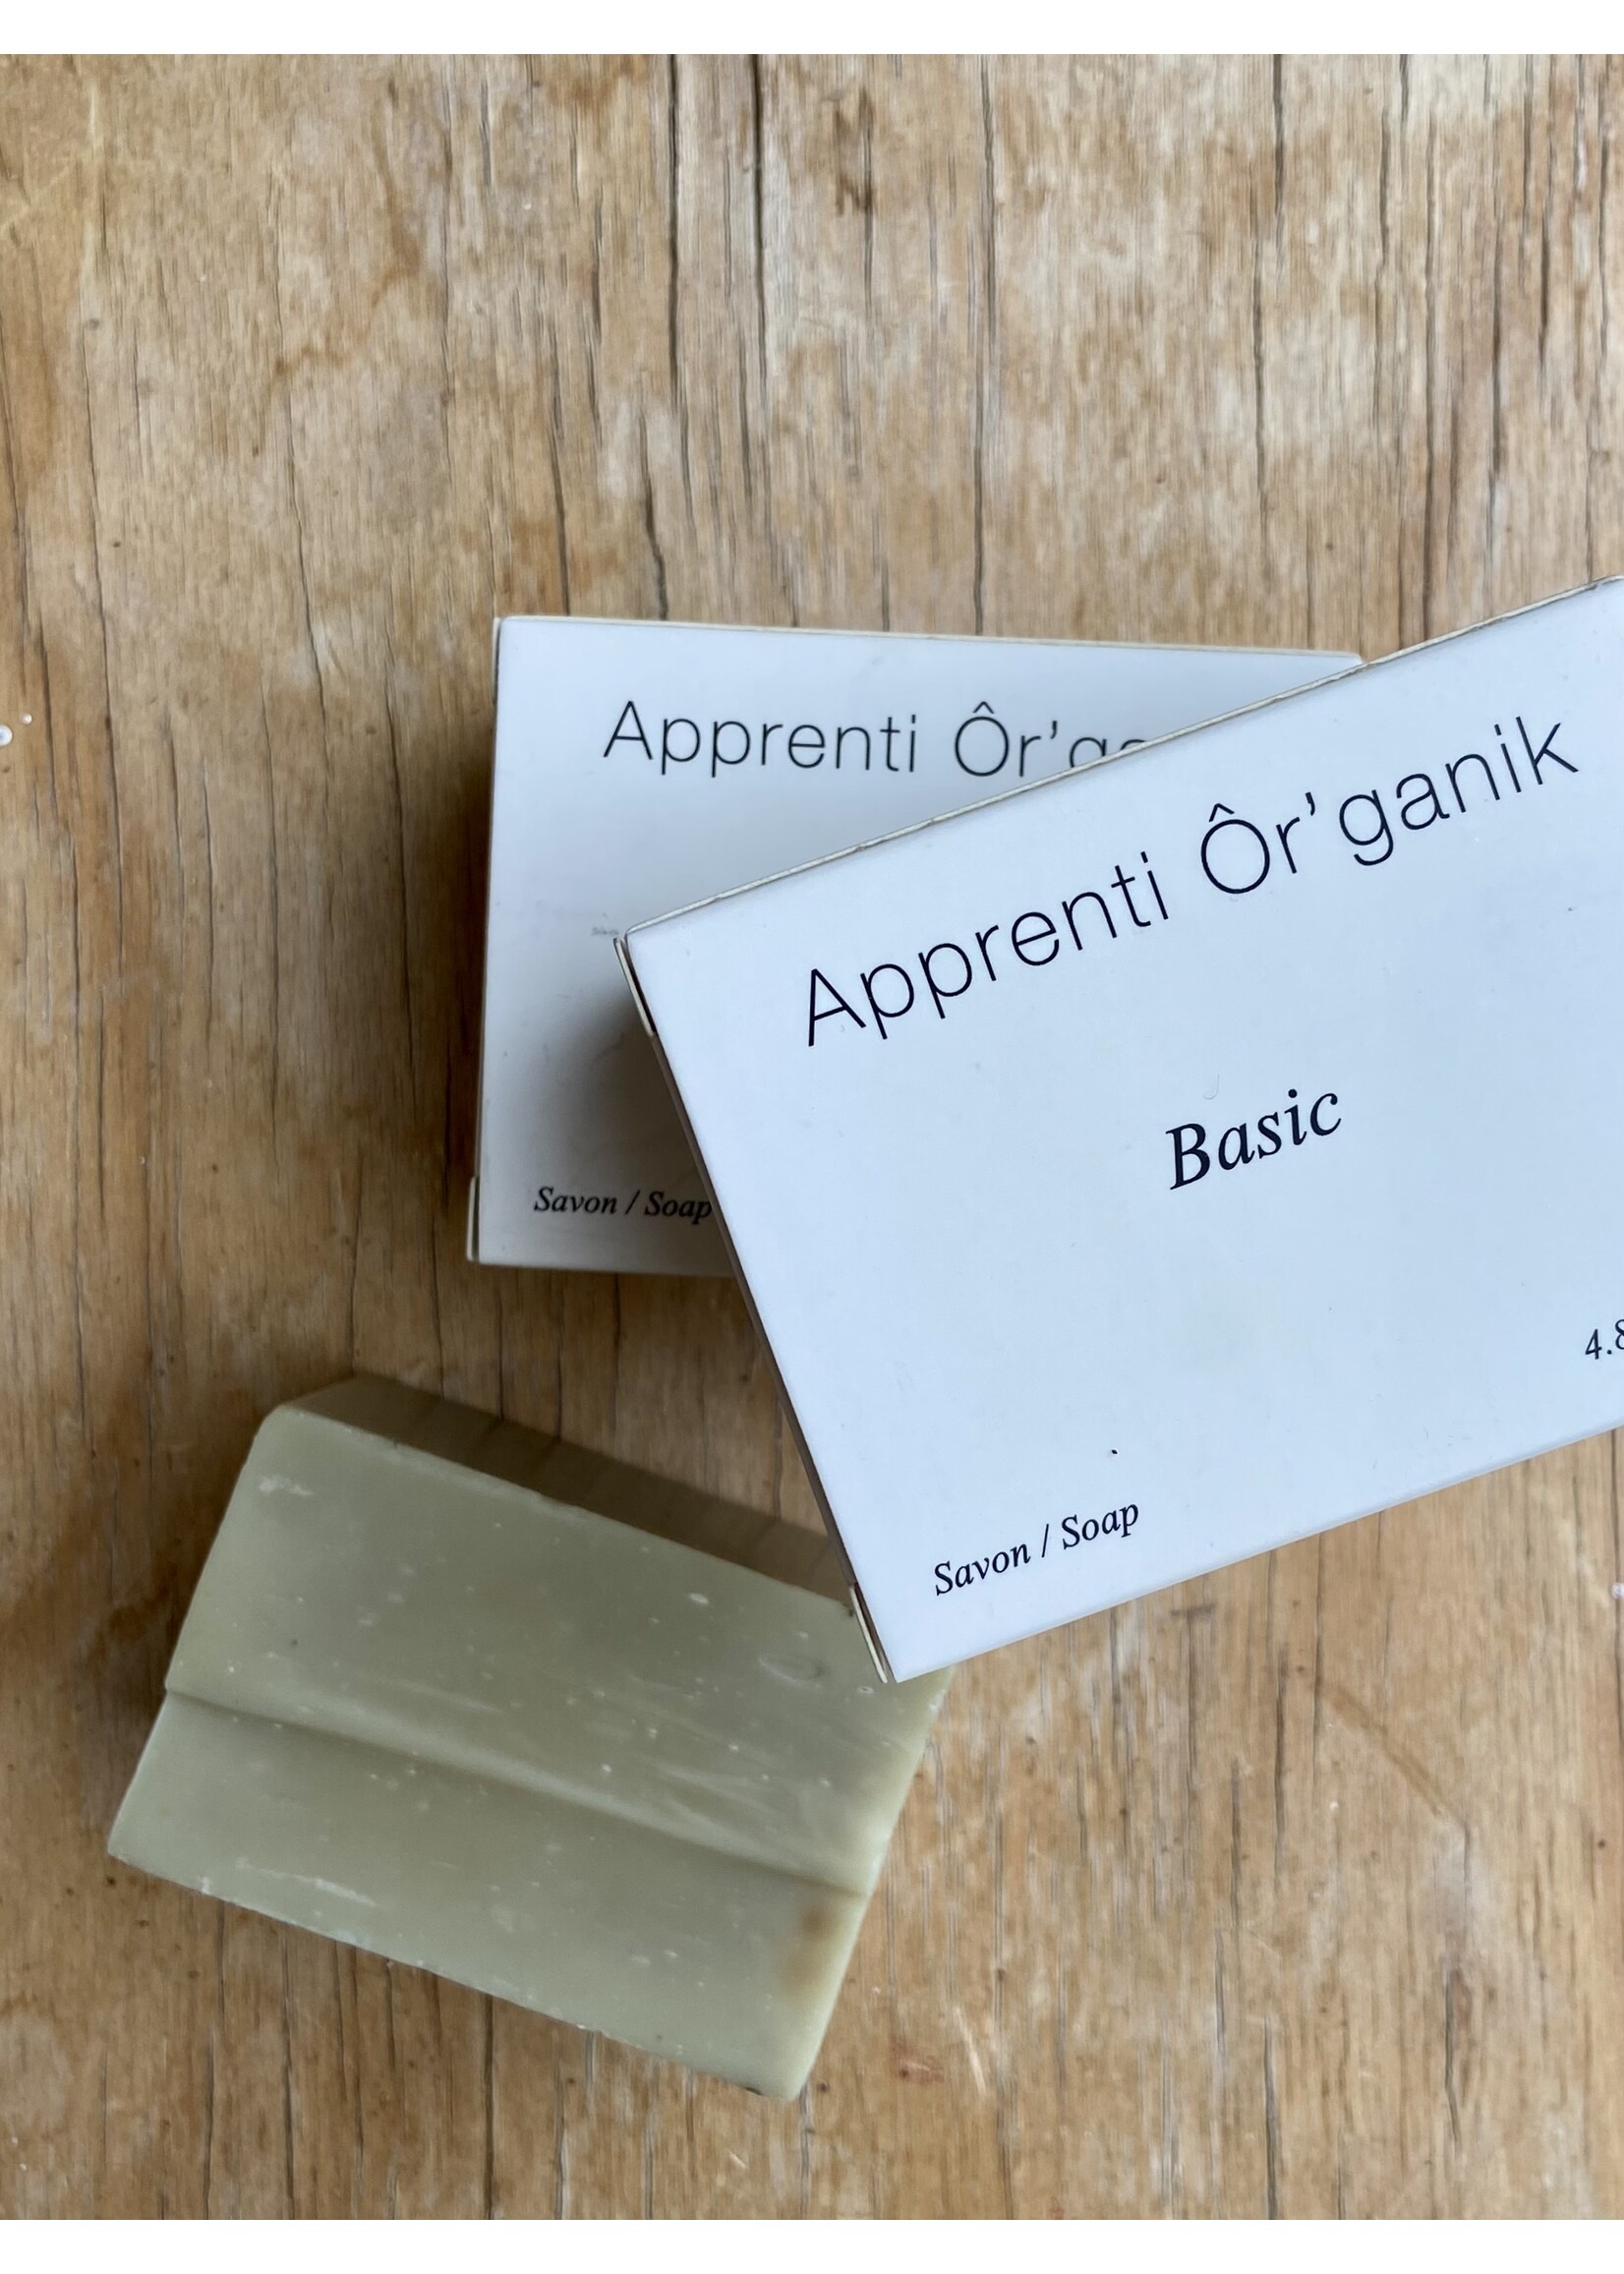 Apprenti Organik Herbal soap by Apprenti Organik